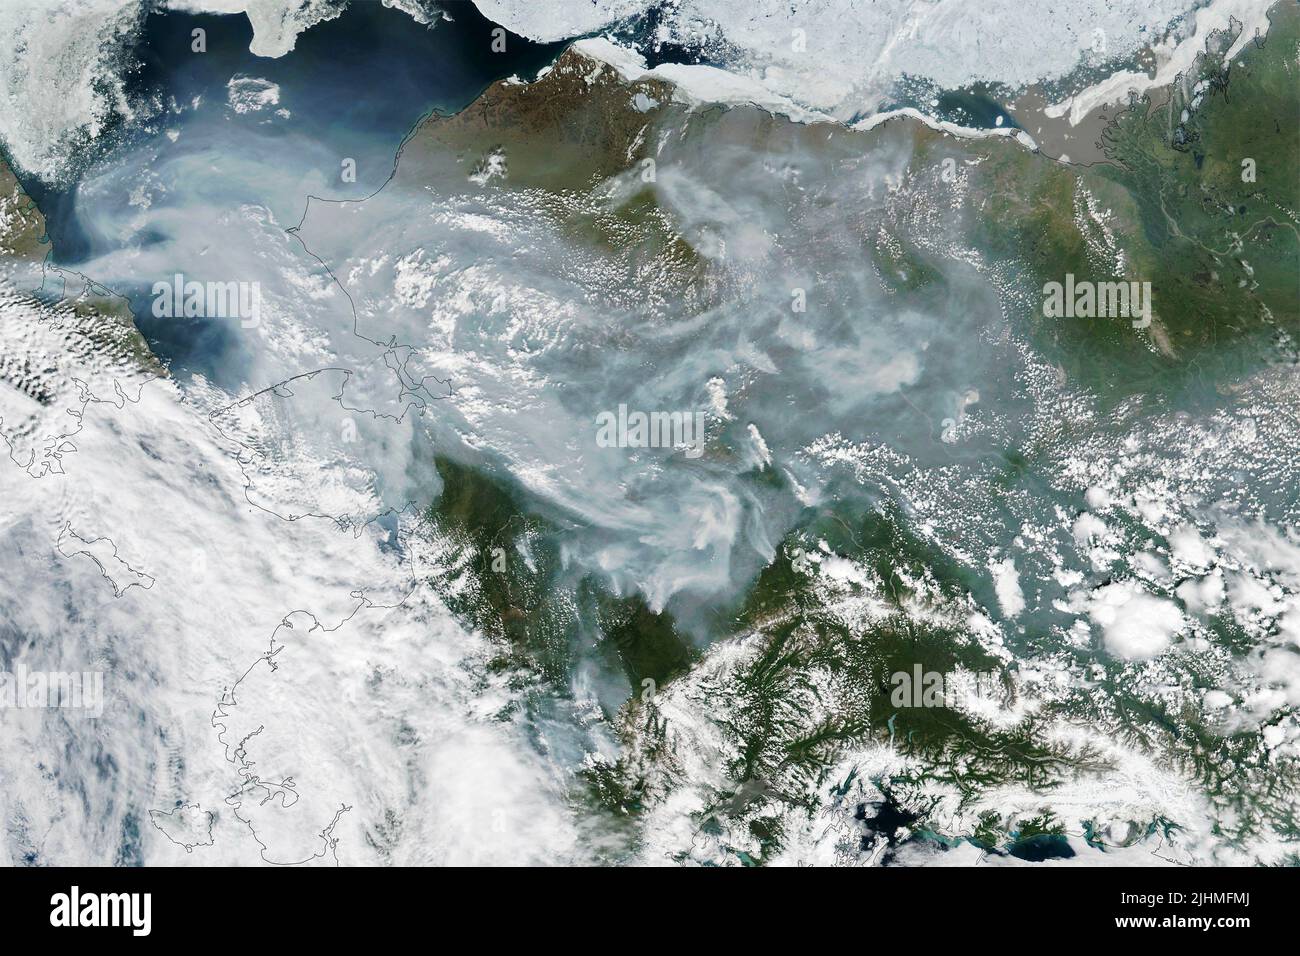 Un'immagine satellitare che mostra fumo da incendi boschivi che colmano i vasti spazi dell'Alaska raccolti dal satellite NASA-NOAA Suomi NPP, il 1 luglio 2022, in Earth Orbit. Gli incendi intensi che bruciavano nei mesi di giugno e luglio si sono localizzati nelle regioni meridionali e interne dello stato, ma i venti meridionali spingevano il fumo anche nell'estremo nord. Foto Stock